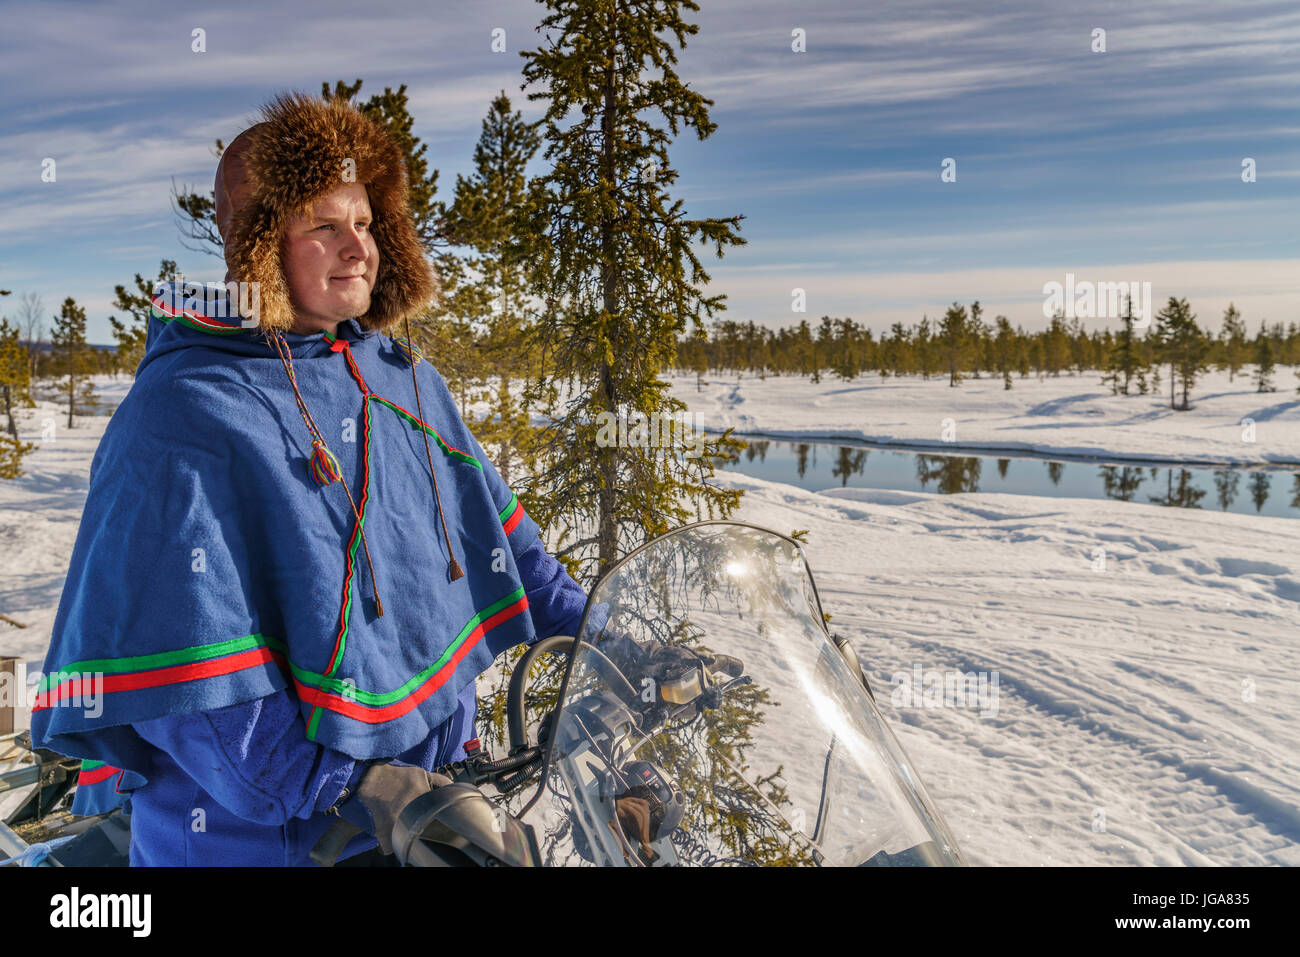 Mann in traditioneller Kleidung der Sami auf einem Schneemobil, Lappland, Schweden Stockfoto